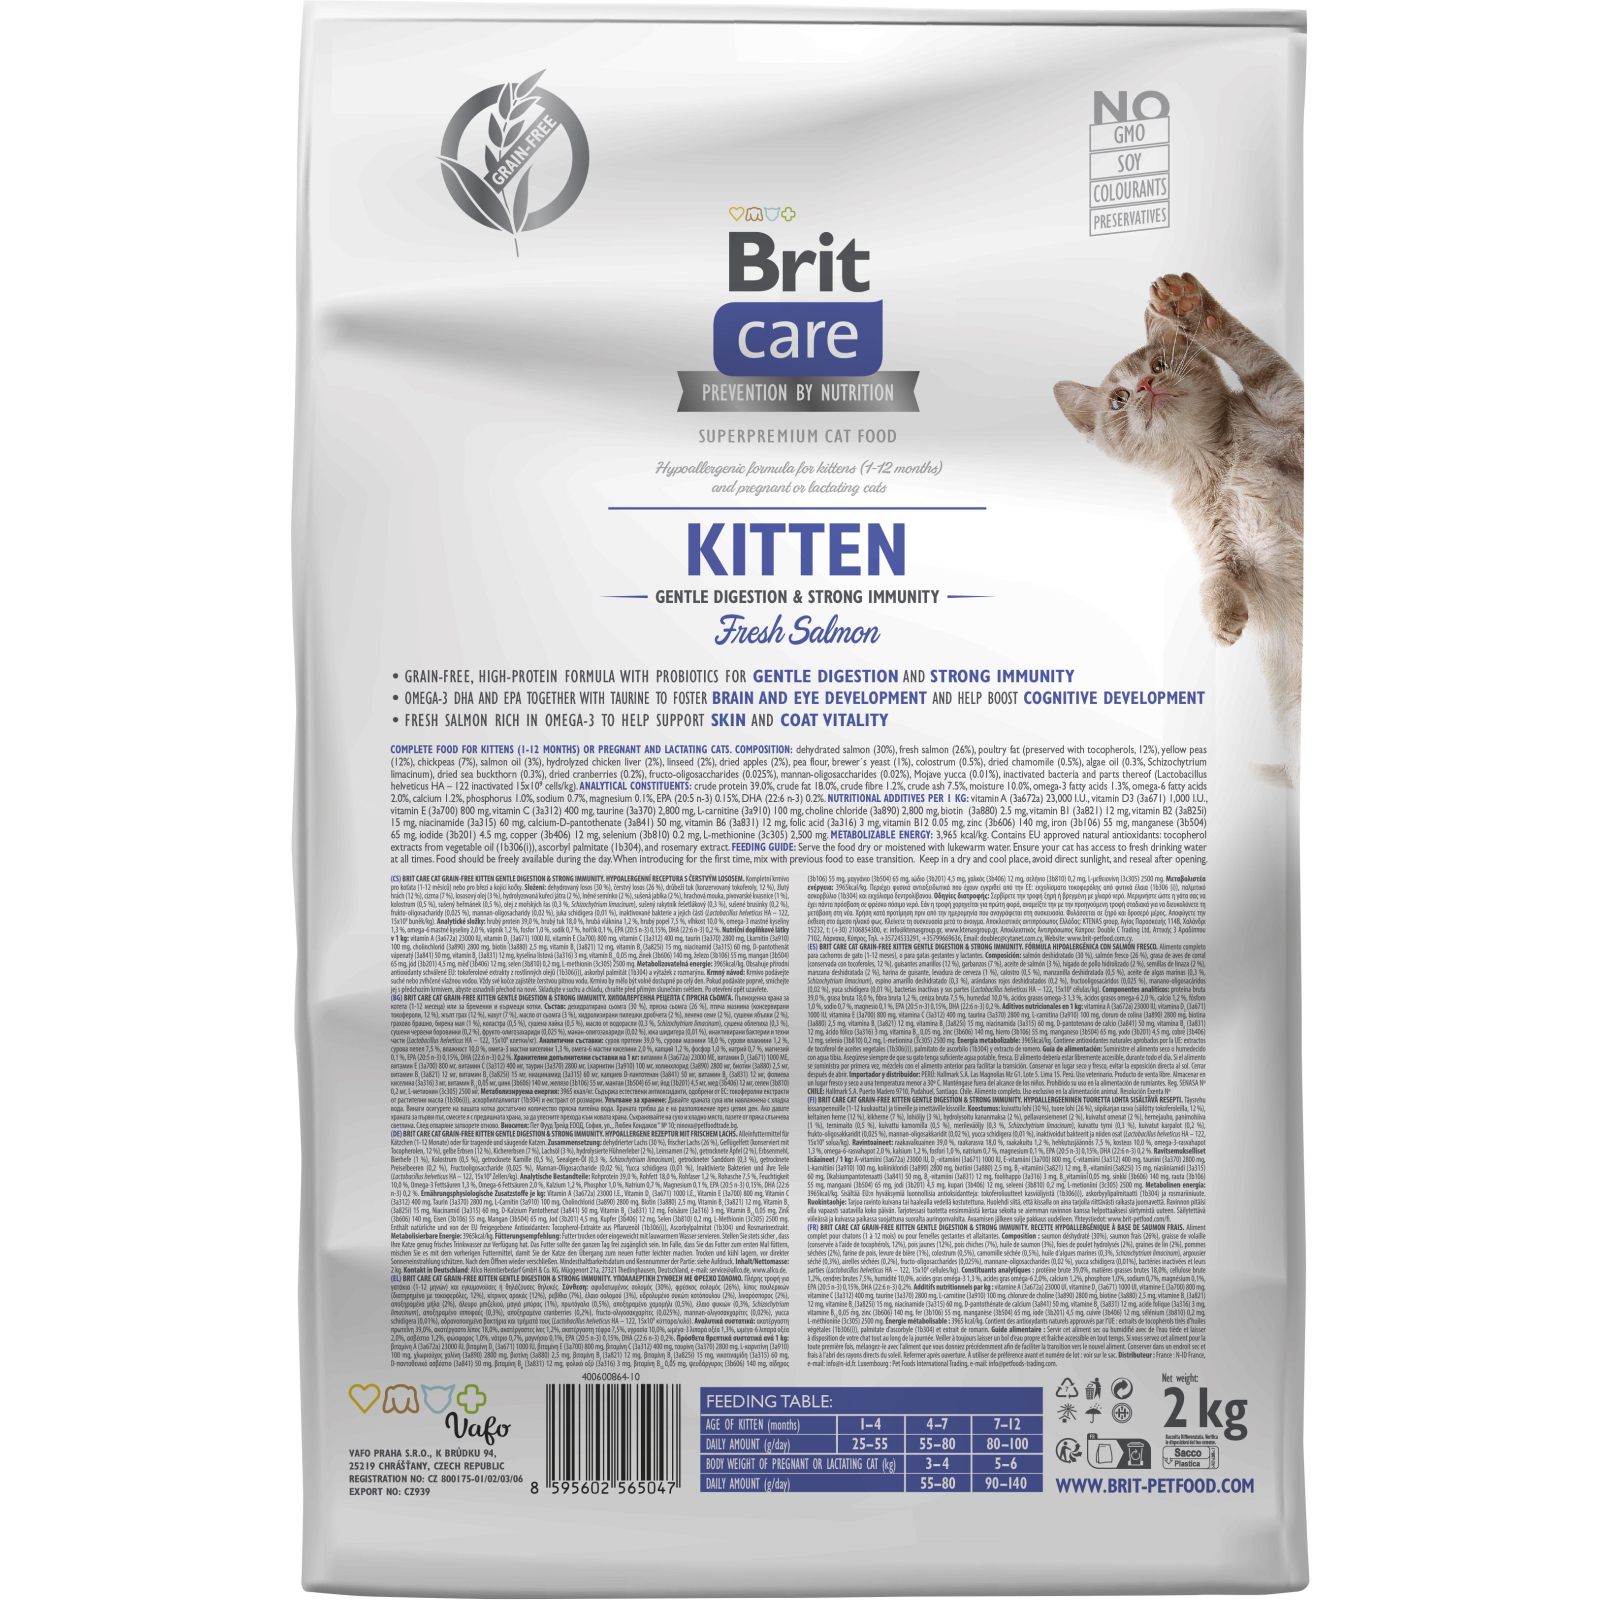 Сухой корм для кошек Brit Care Cat GF Kitten Gentle Digestion Strong Immunity с лососем 2 кг (8595602565047) изображение 2